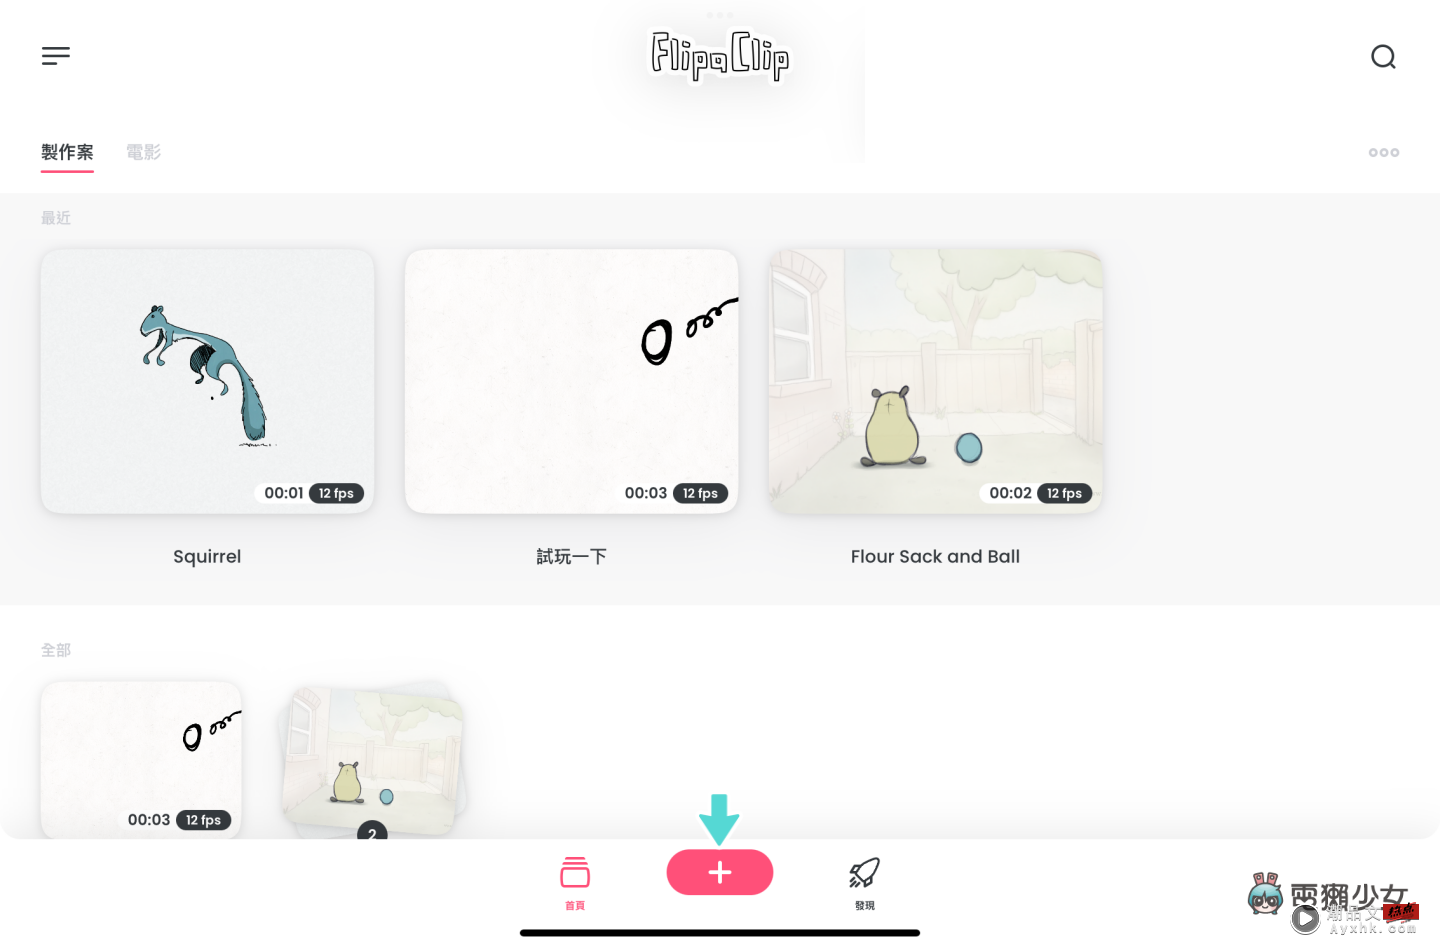 快速制作 2D 卡通动画！免费 App FlipaClip 简单使用教学分享 数码科技 图2张